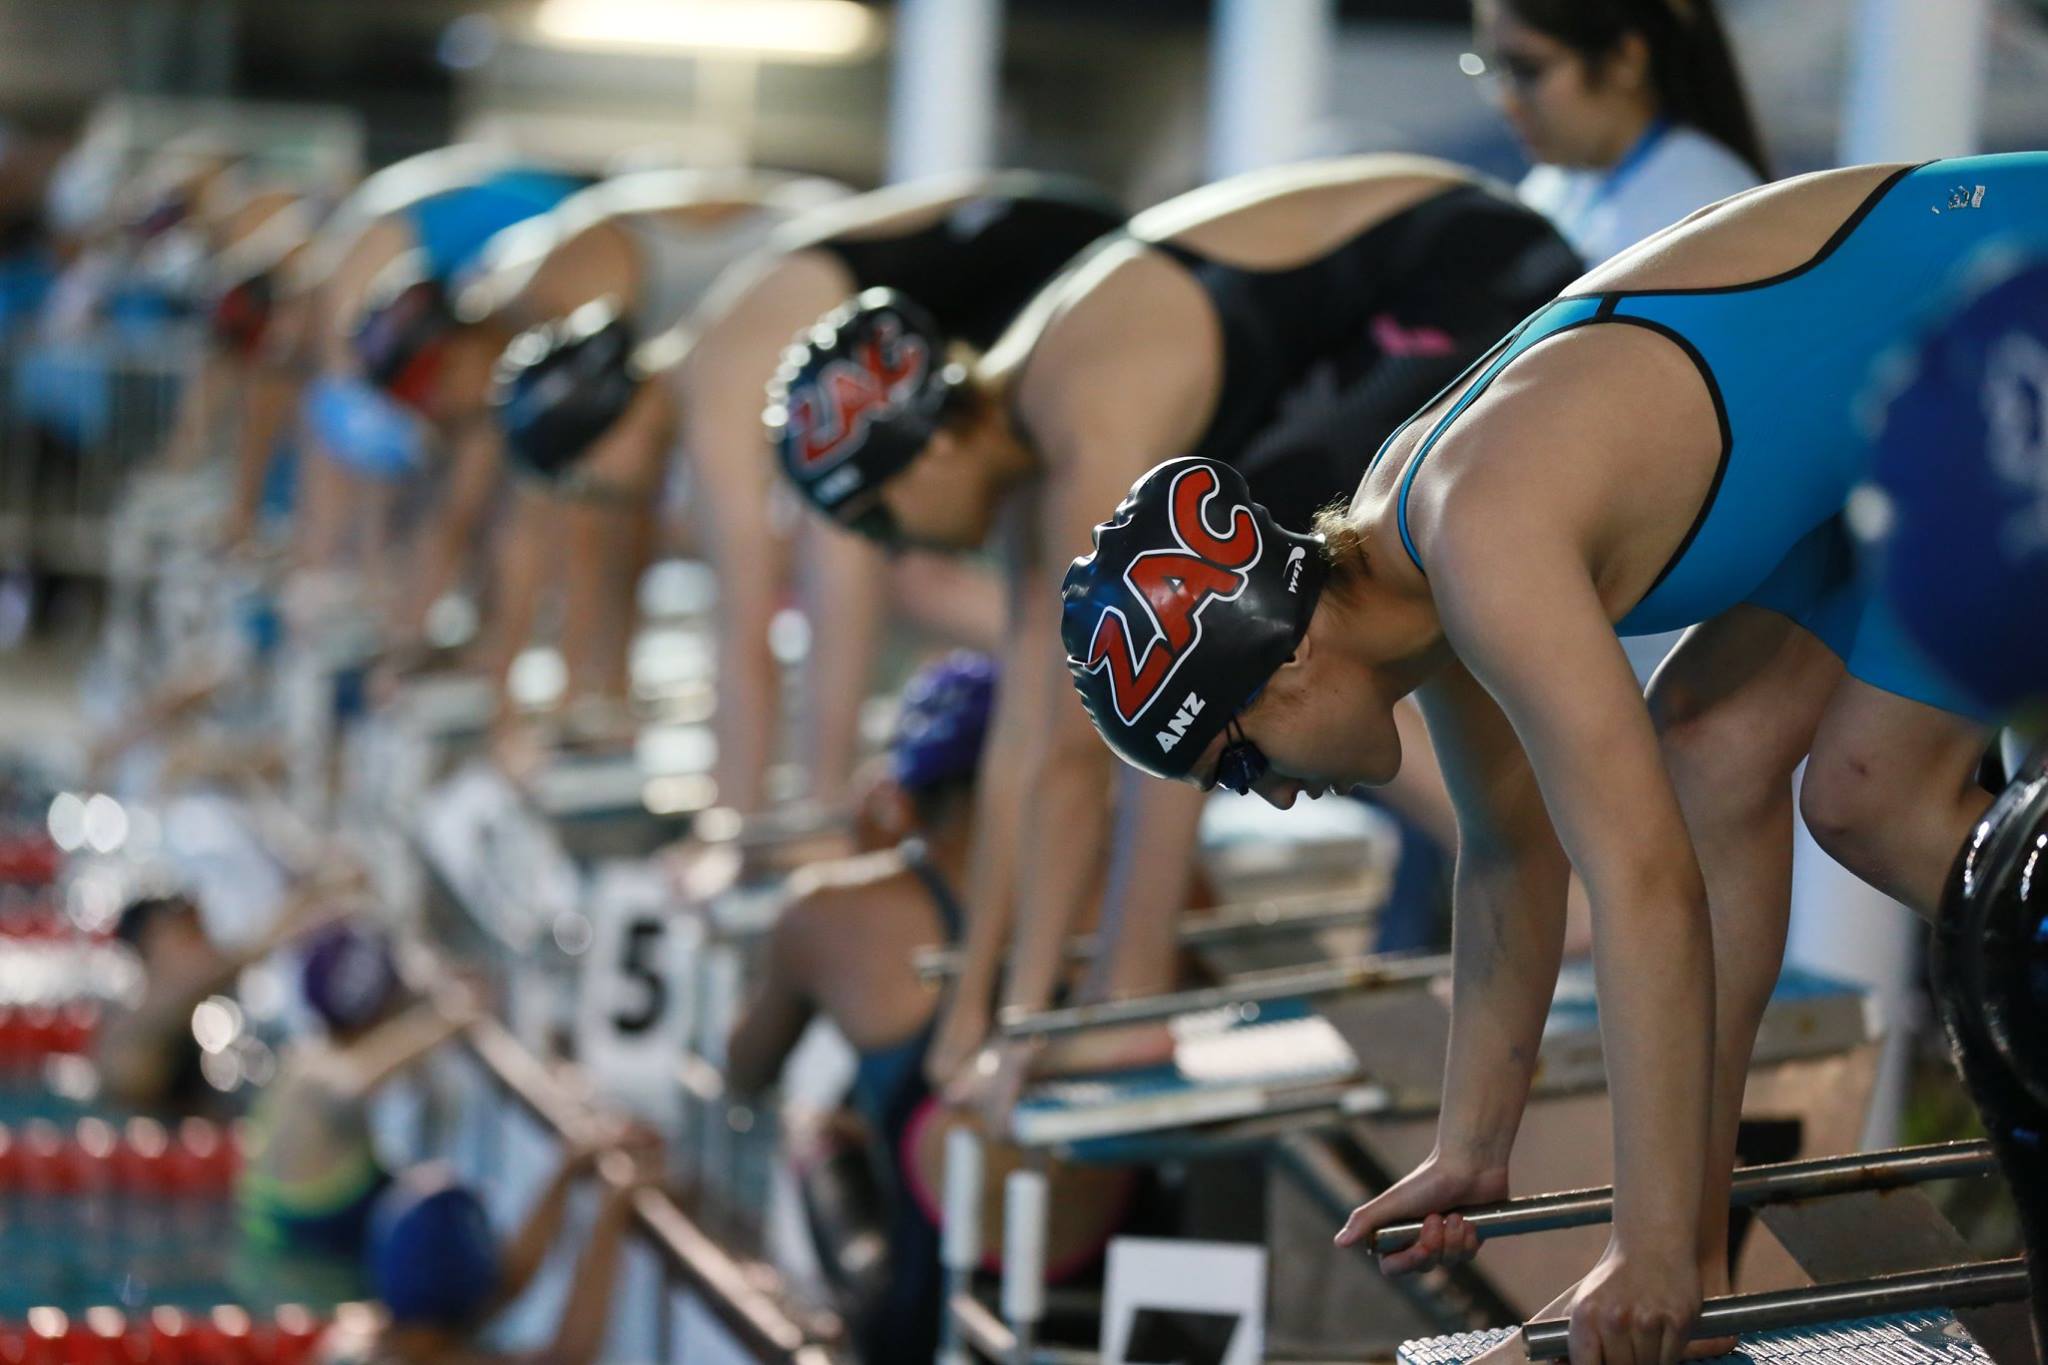 Nadadores reconocen molestias en garganta por alberca